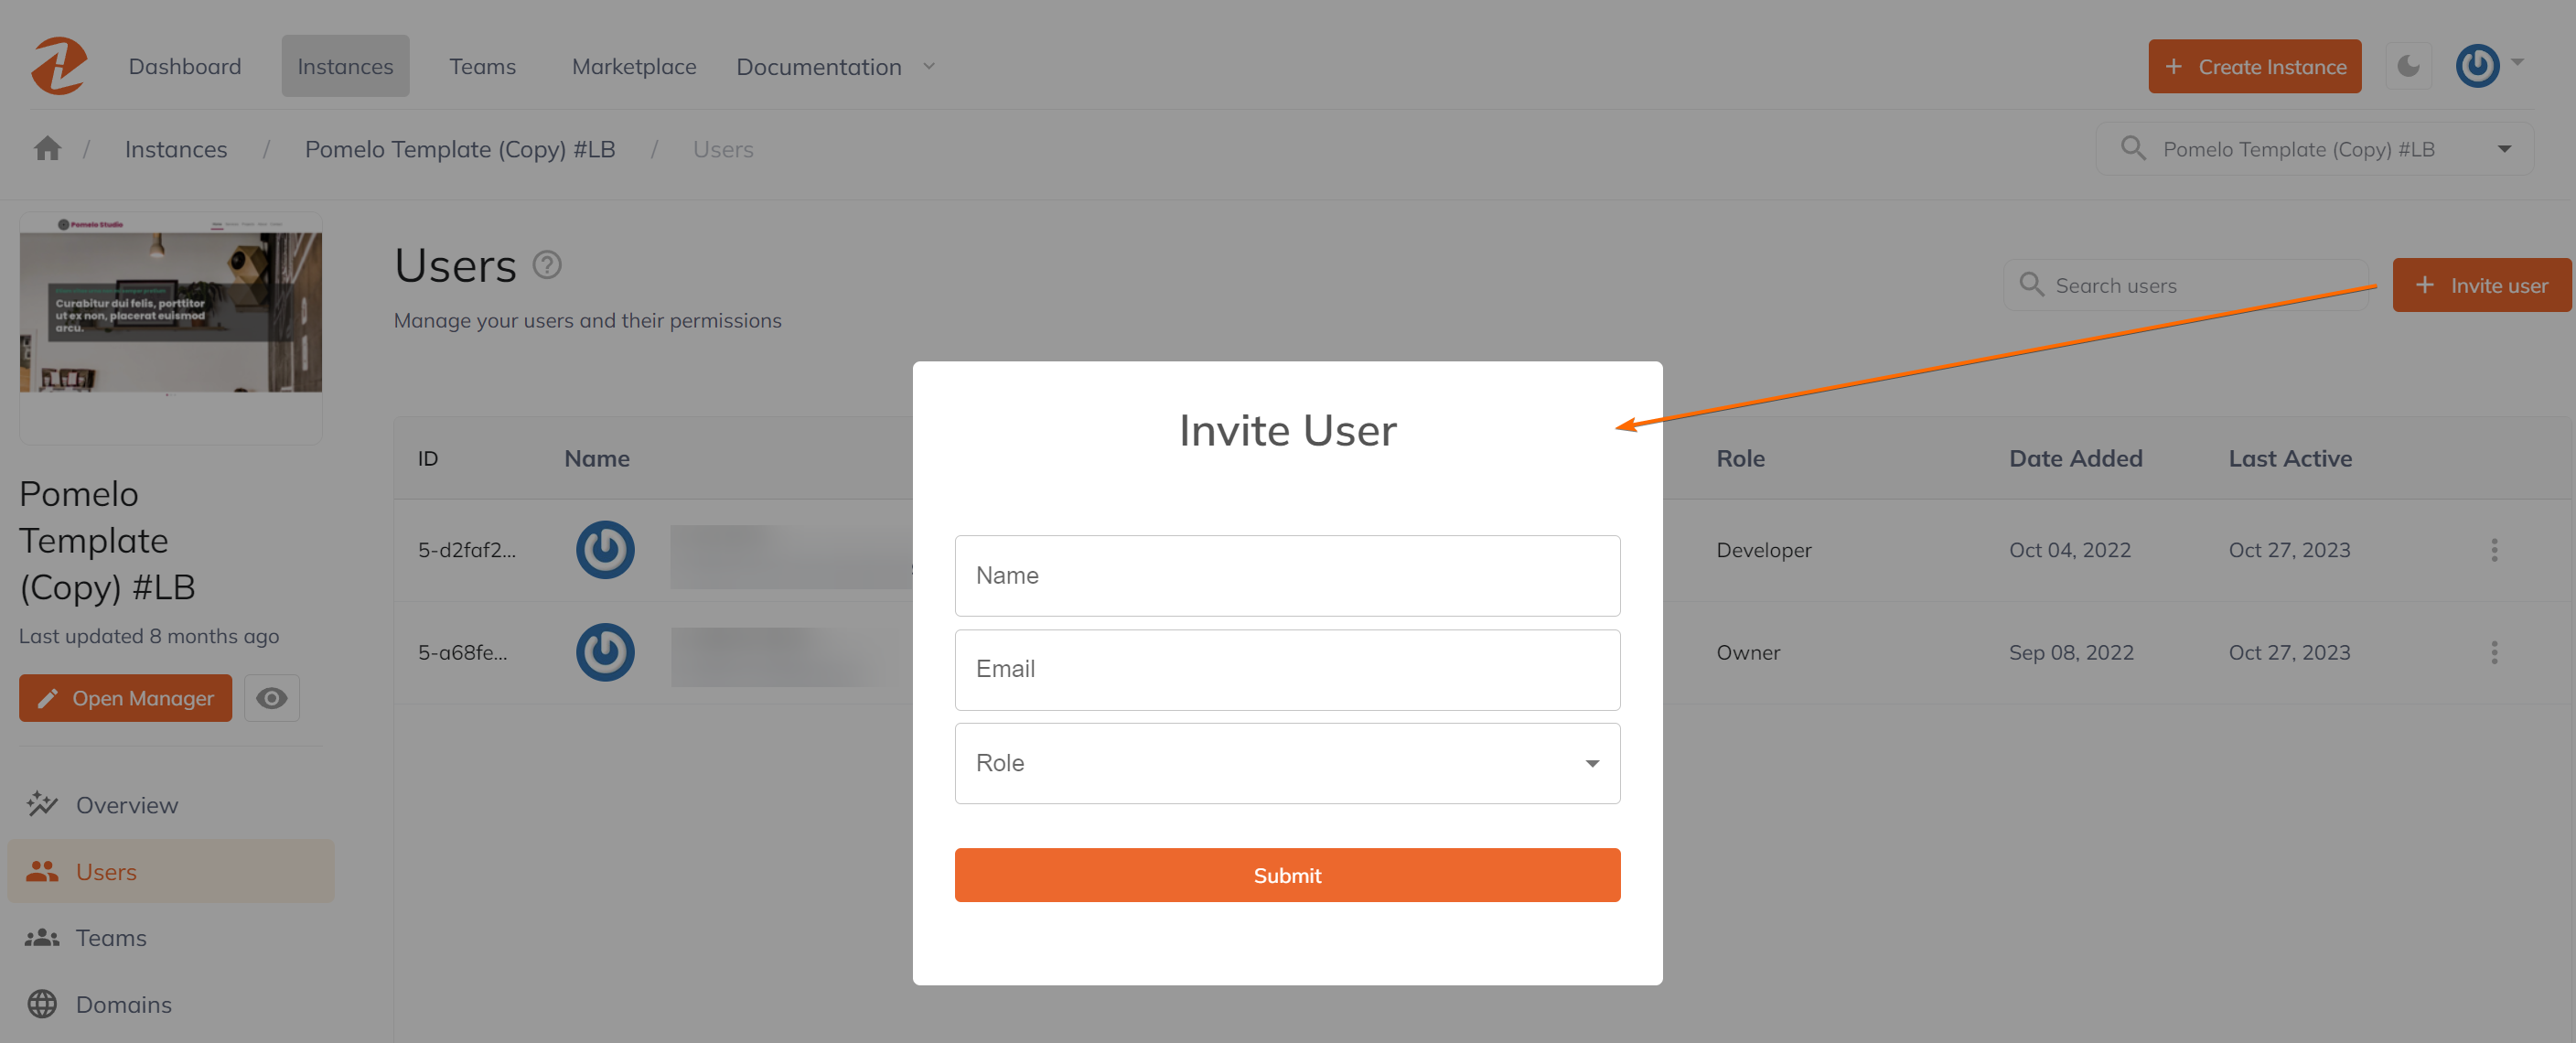 User Invitation Form